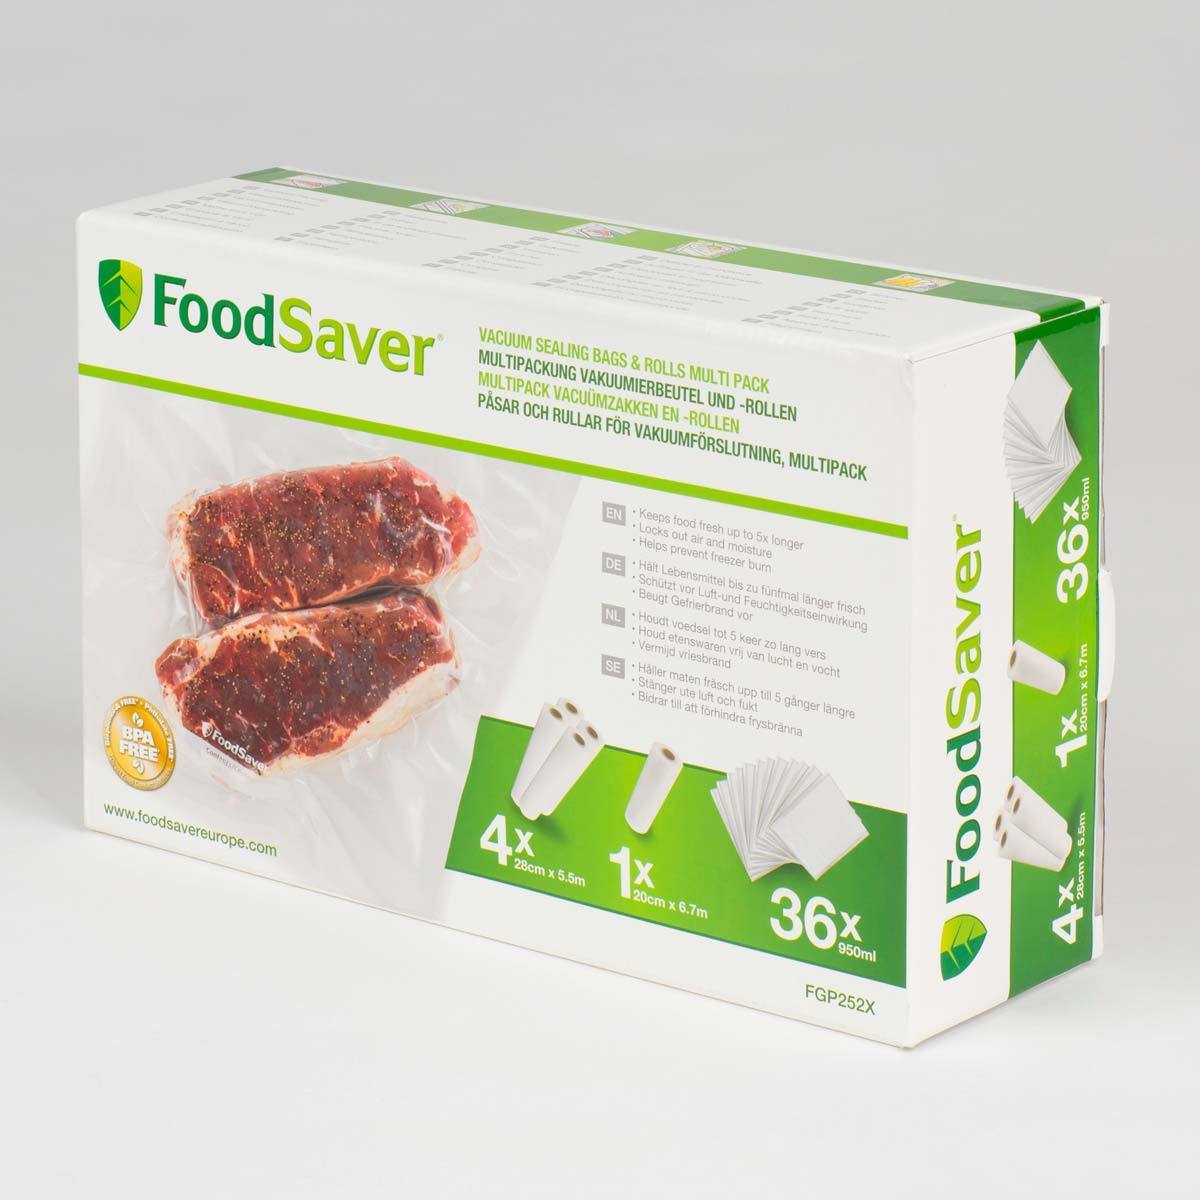 FoodSaver Vacuum Sealing Bags & Rolls Combo Pack, FGP252X